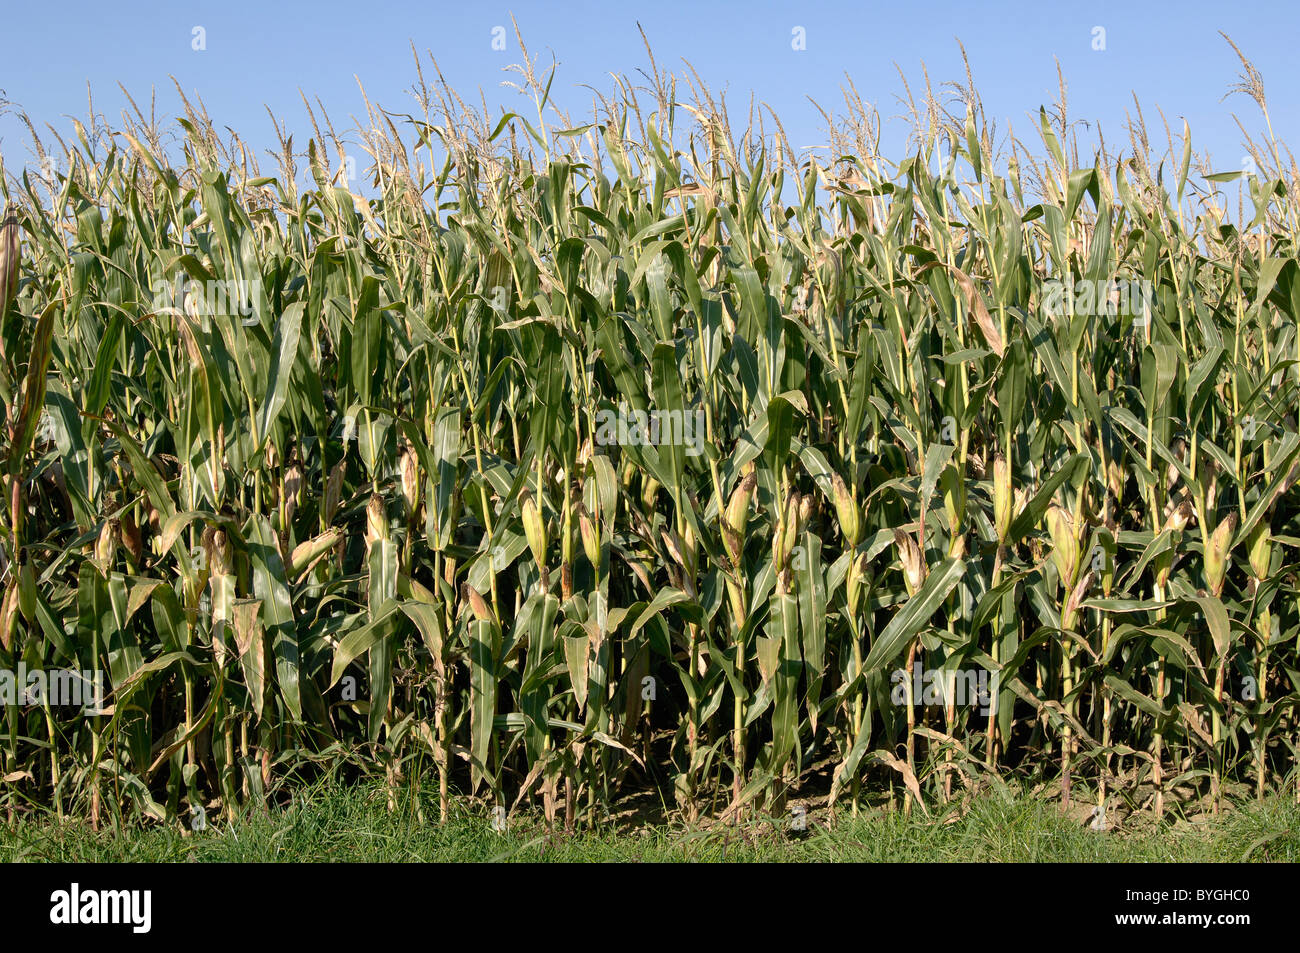 El maíz, el maíz (Zea mays). Borde de un campo. Foto de stock